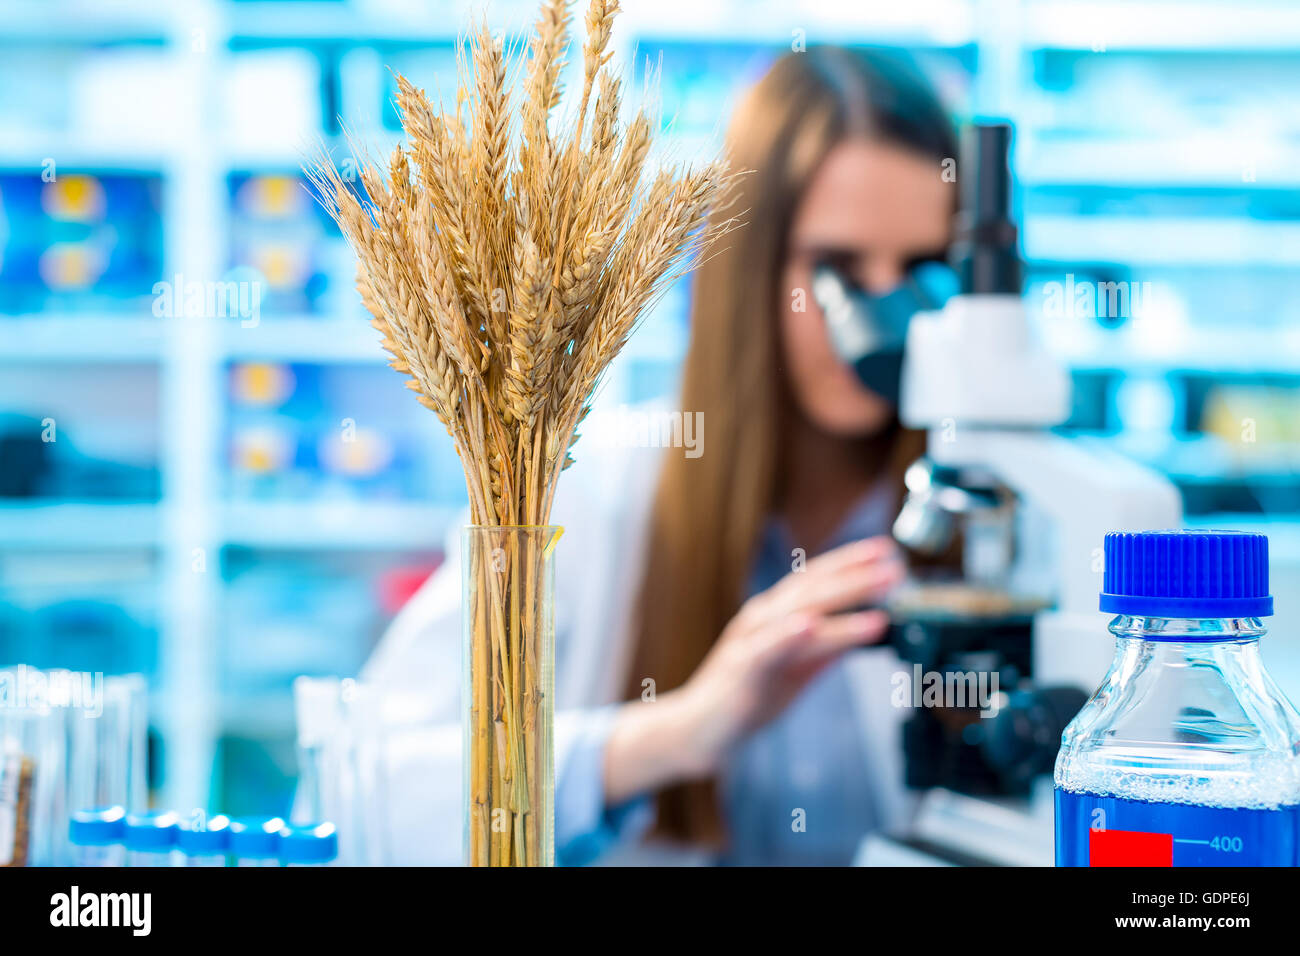 Los cultivos de trigo de investigación en el laboratorio. Foto de stock